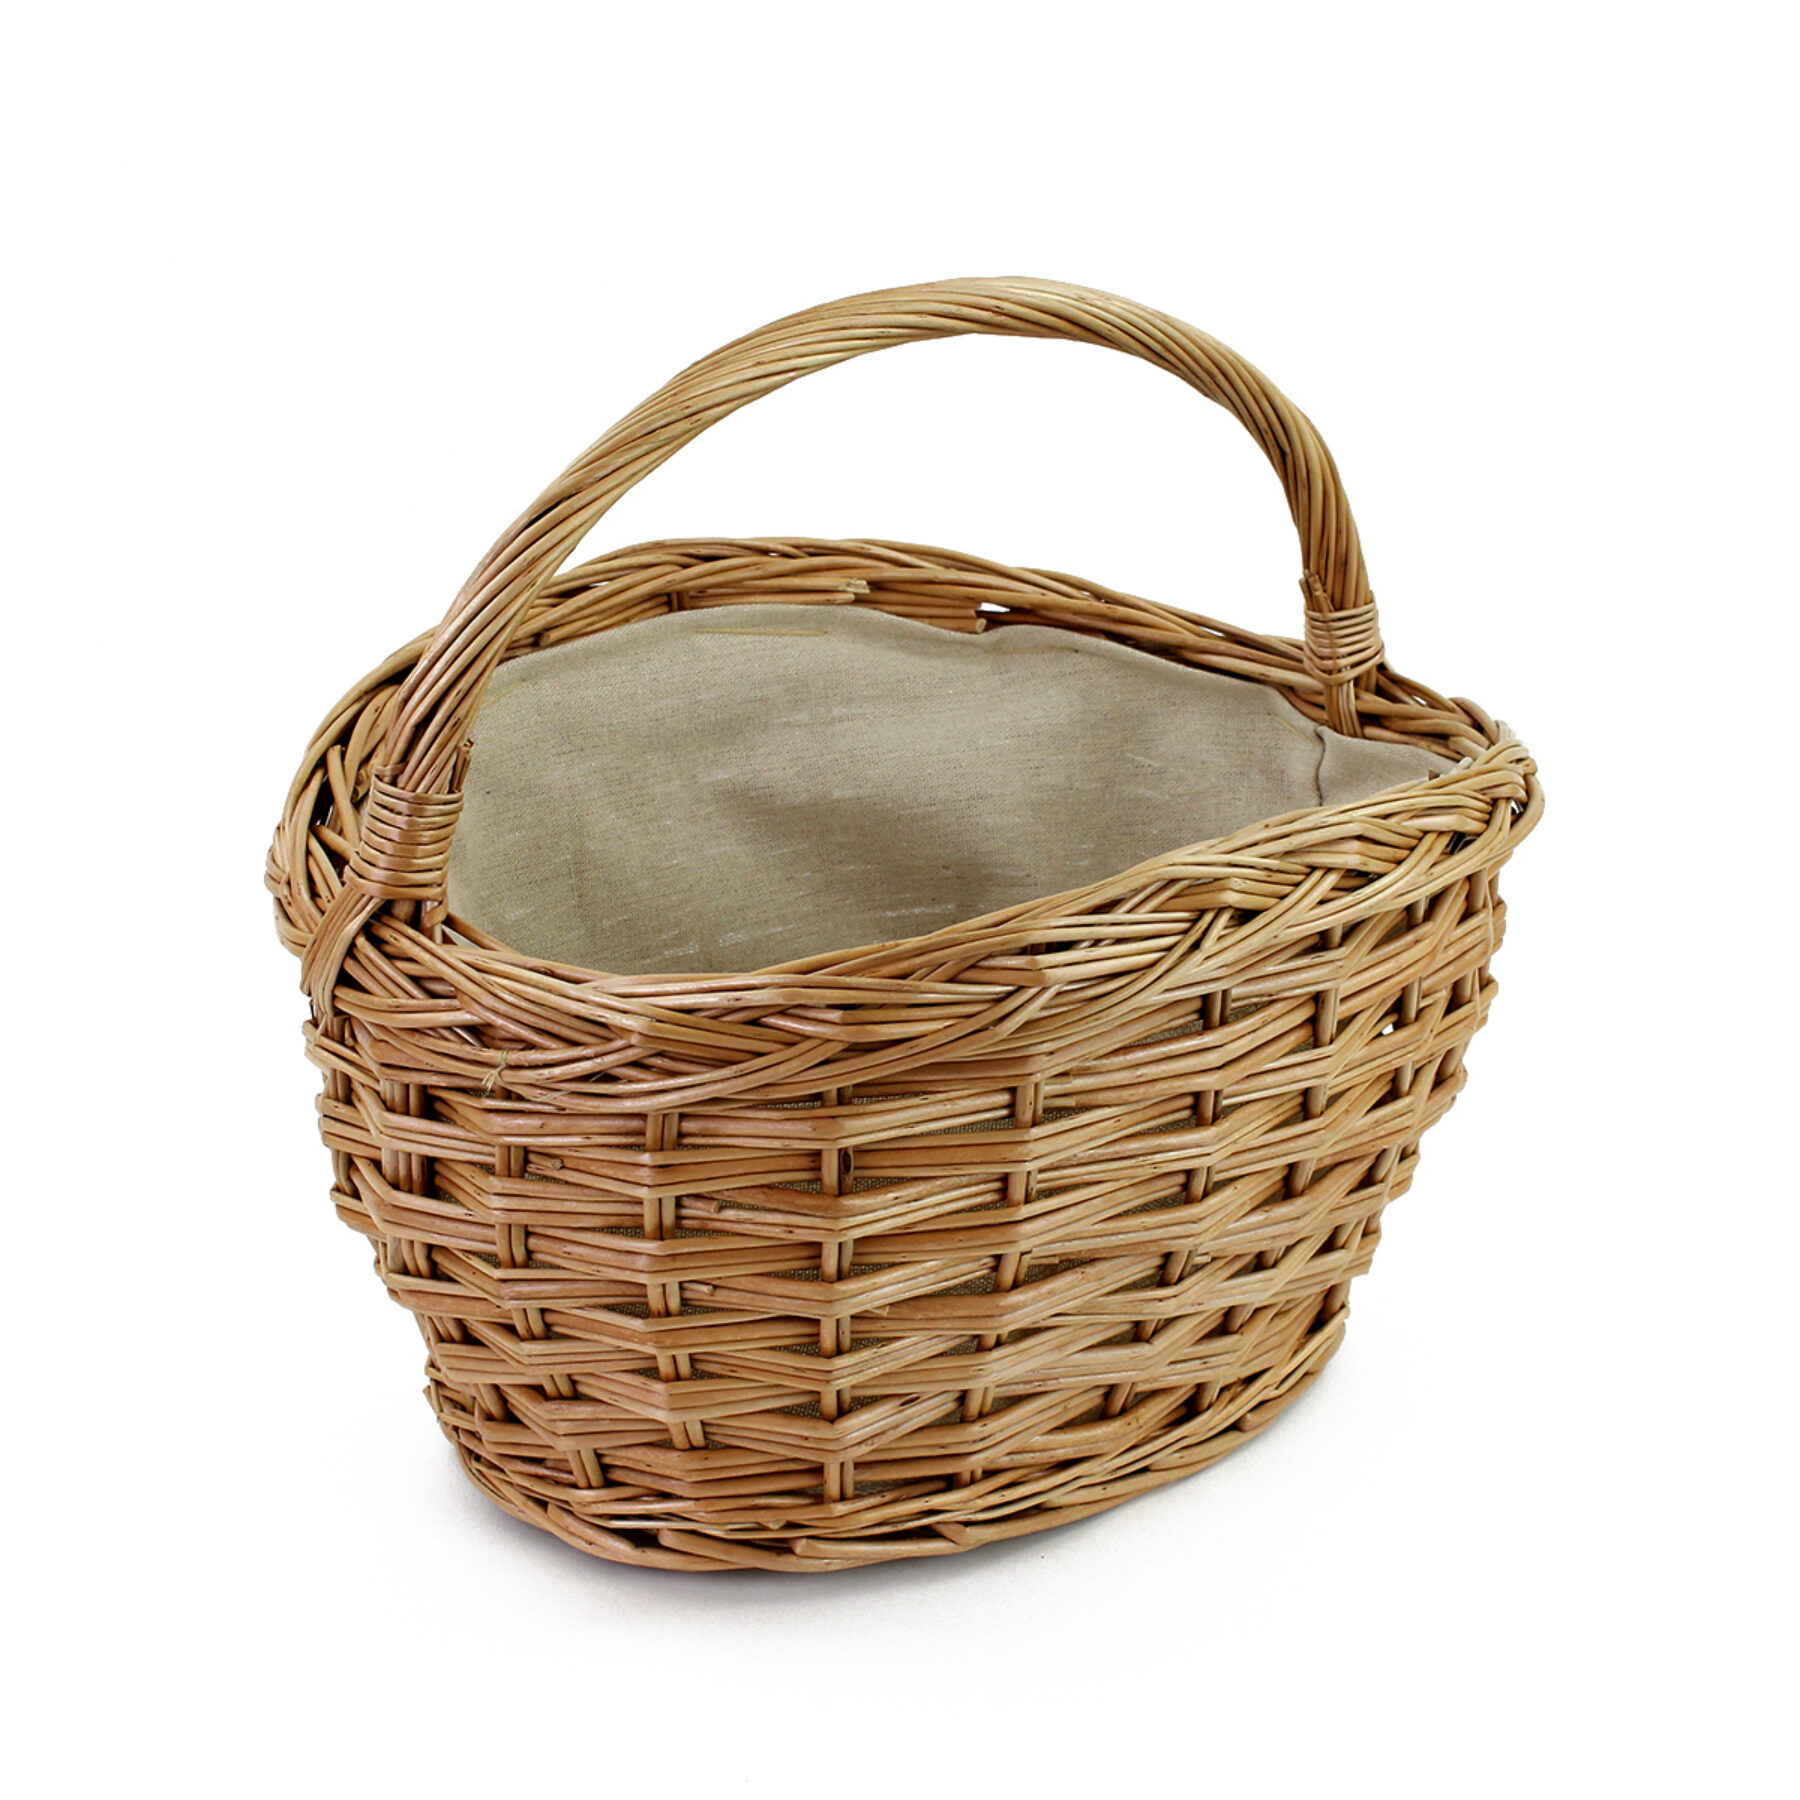 Wicker Shopping Basket - Lined